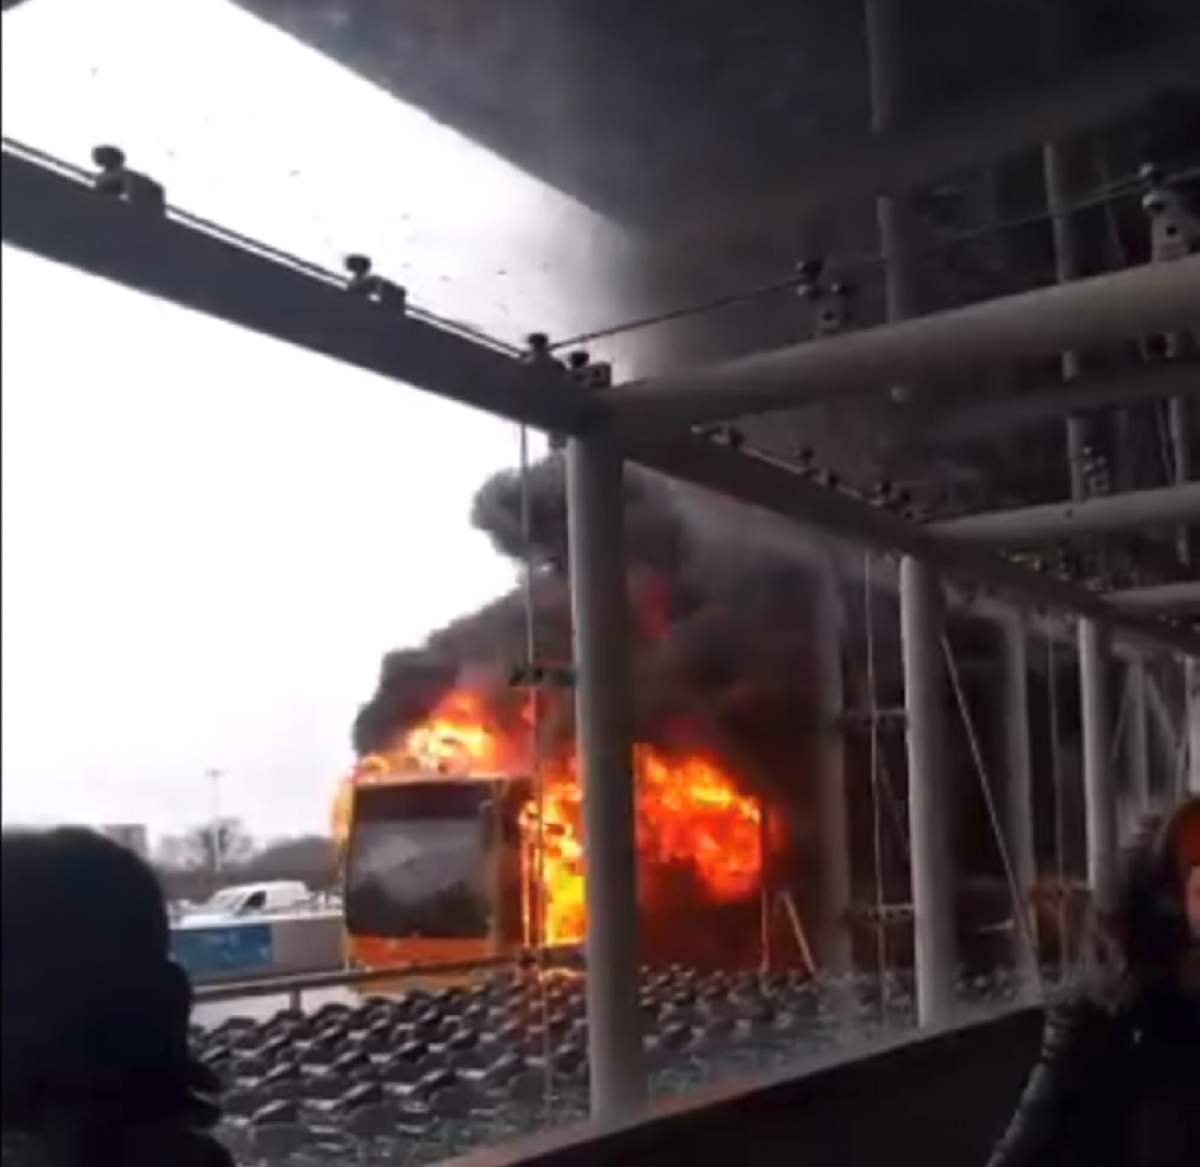 VIDEO / Incident groaznic pe un aeroport din Londra! Un autobuz plin cu pasageri a luat foc